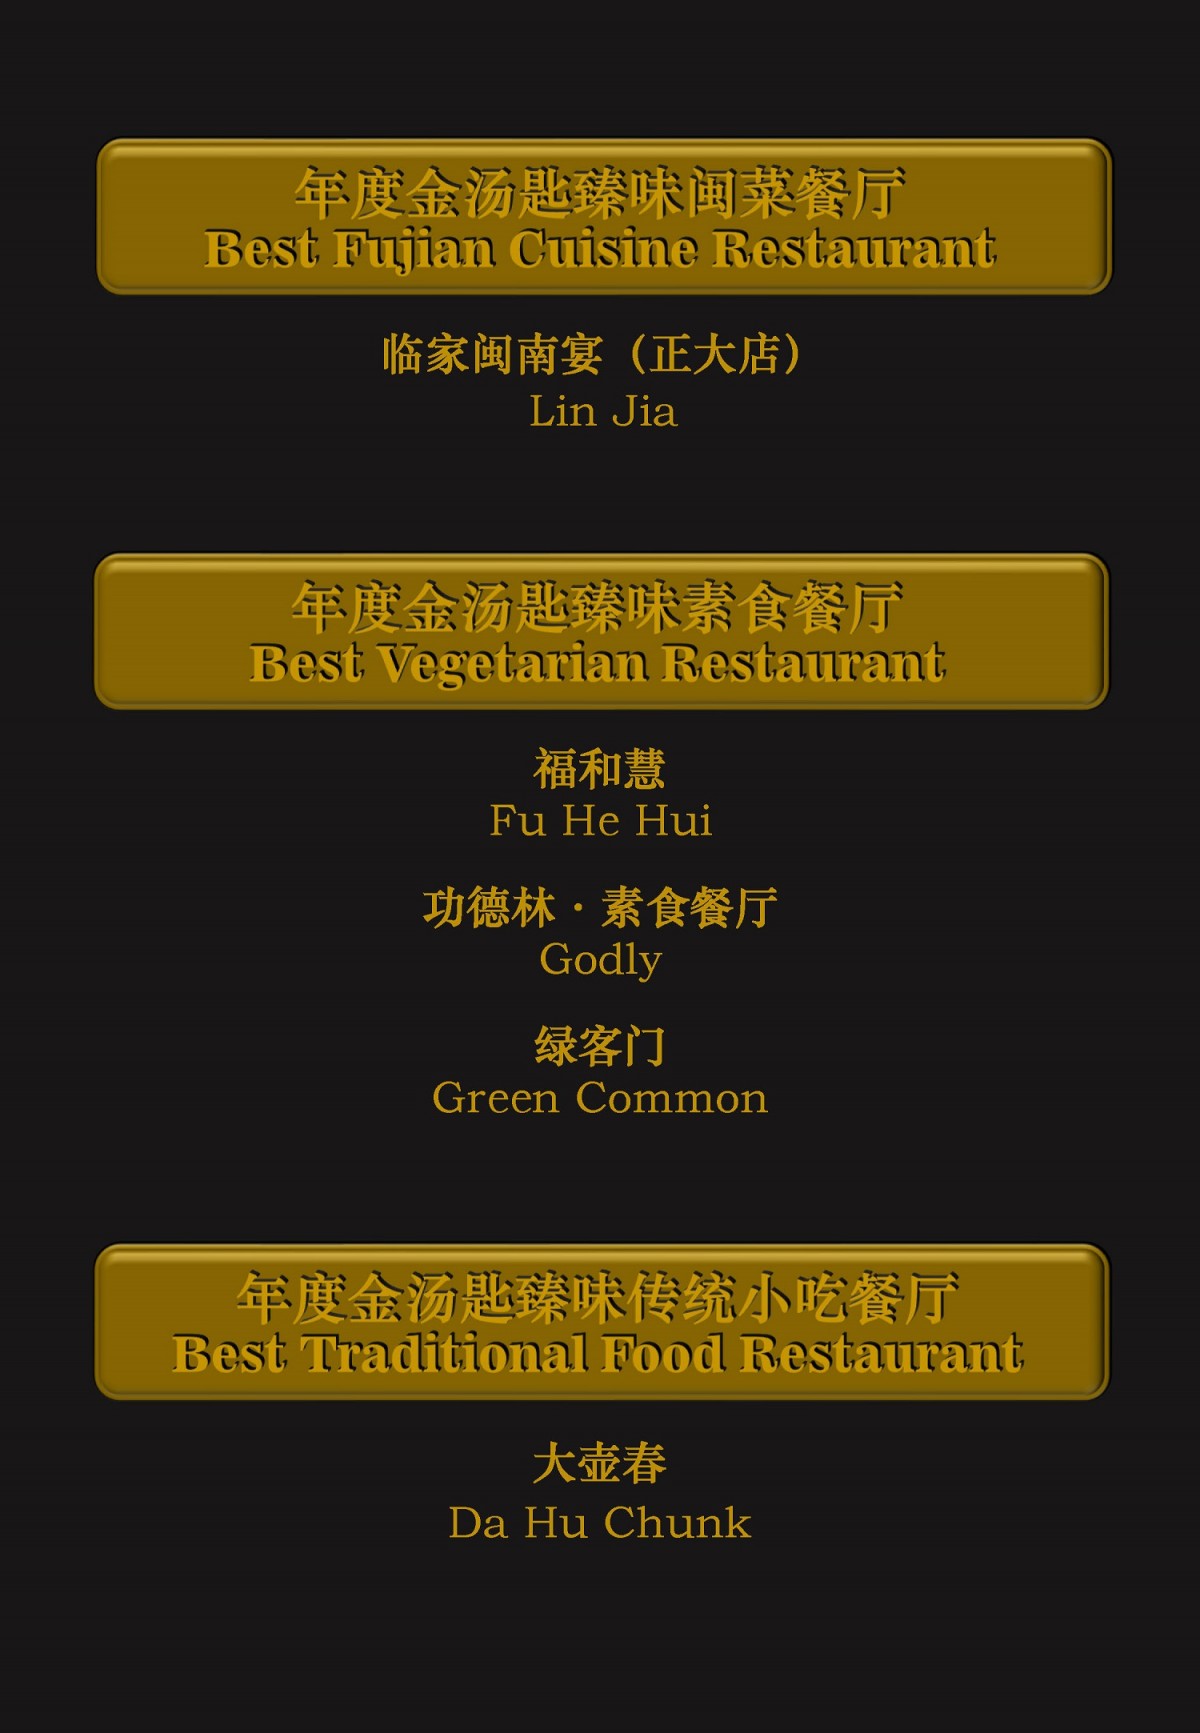 2021年度最佳金汤匙餐厅榜单2_页面_09